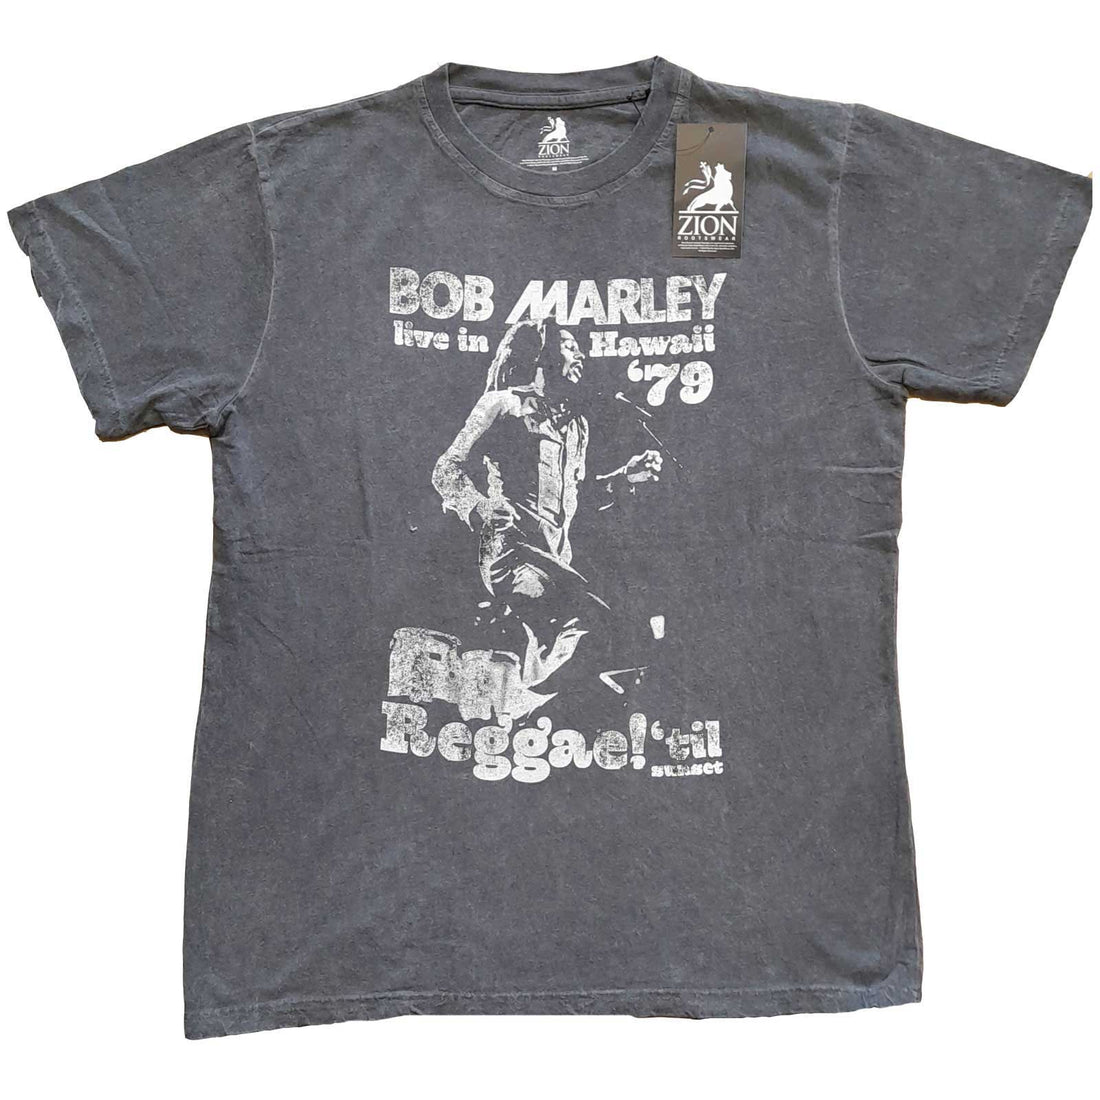 Bob Marley Unisex T-Shirt: Hawaii (Wash Collection)